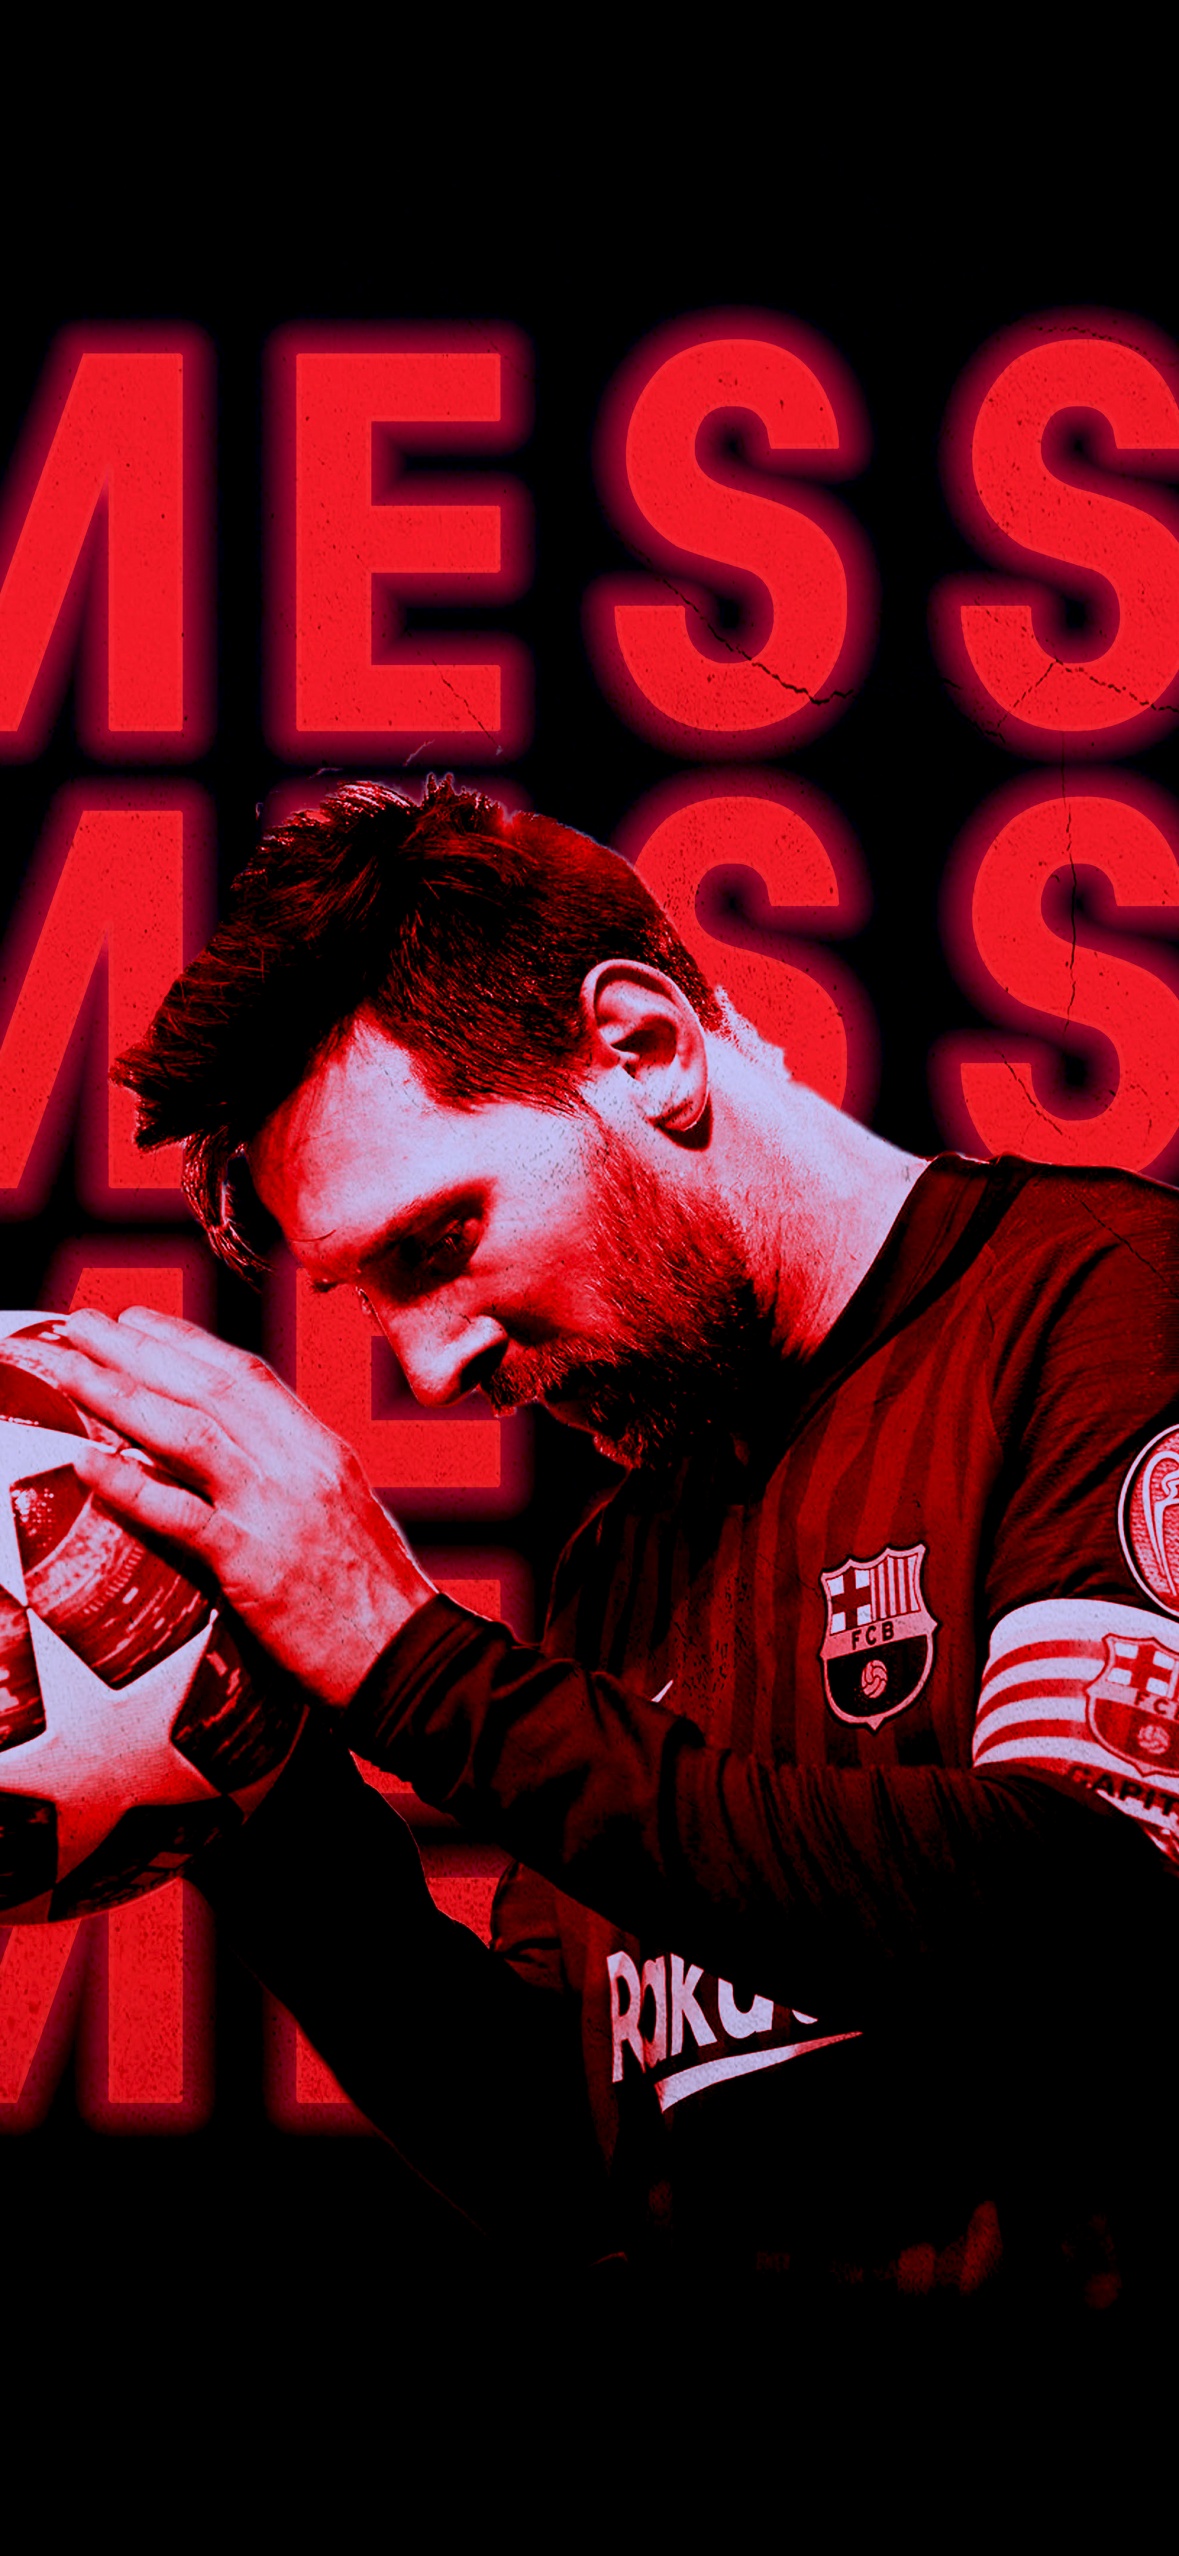 FC Barcelona wallpaper by ElnazTajaddod  Download on ZEDGE  03fd